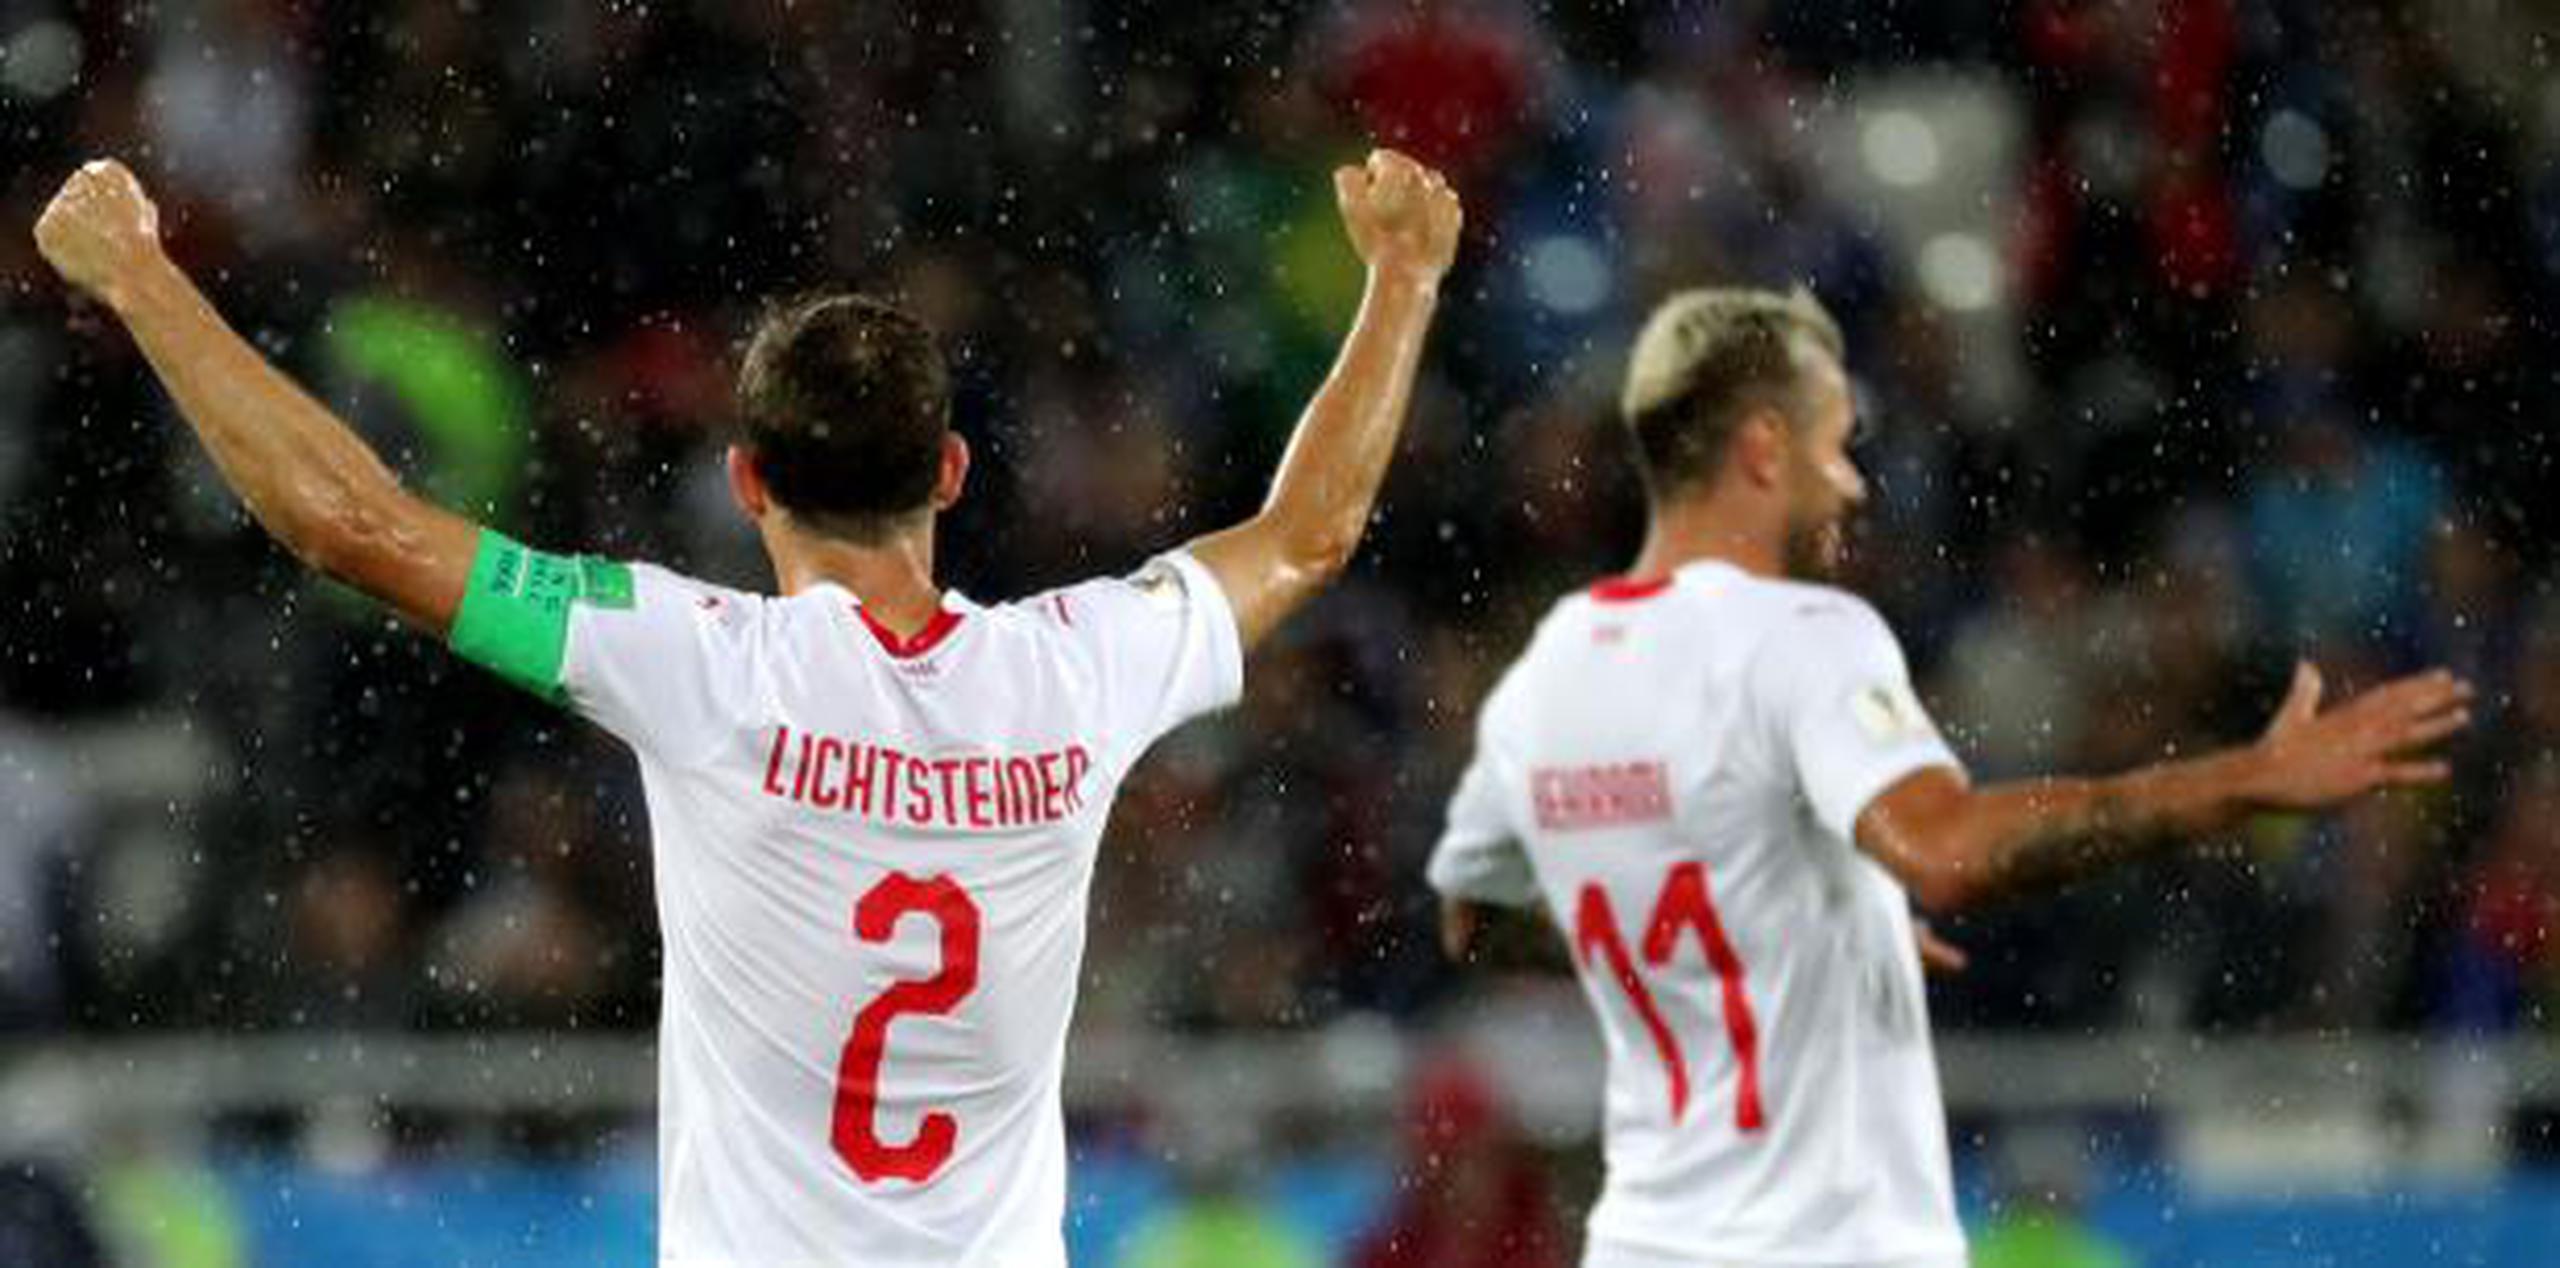 Stephan Lichtsteiner de Suiza (I) y Valon Behrami, de Suiza, reaccionan después de ganar el partido de fútbol preliminar del grupo E de la Copa Mundial de la FIFA 2018 entre Serbia y Suiza. (EFE)